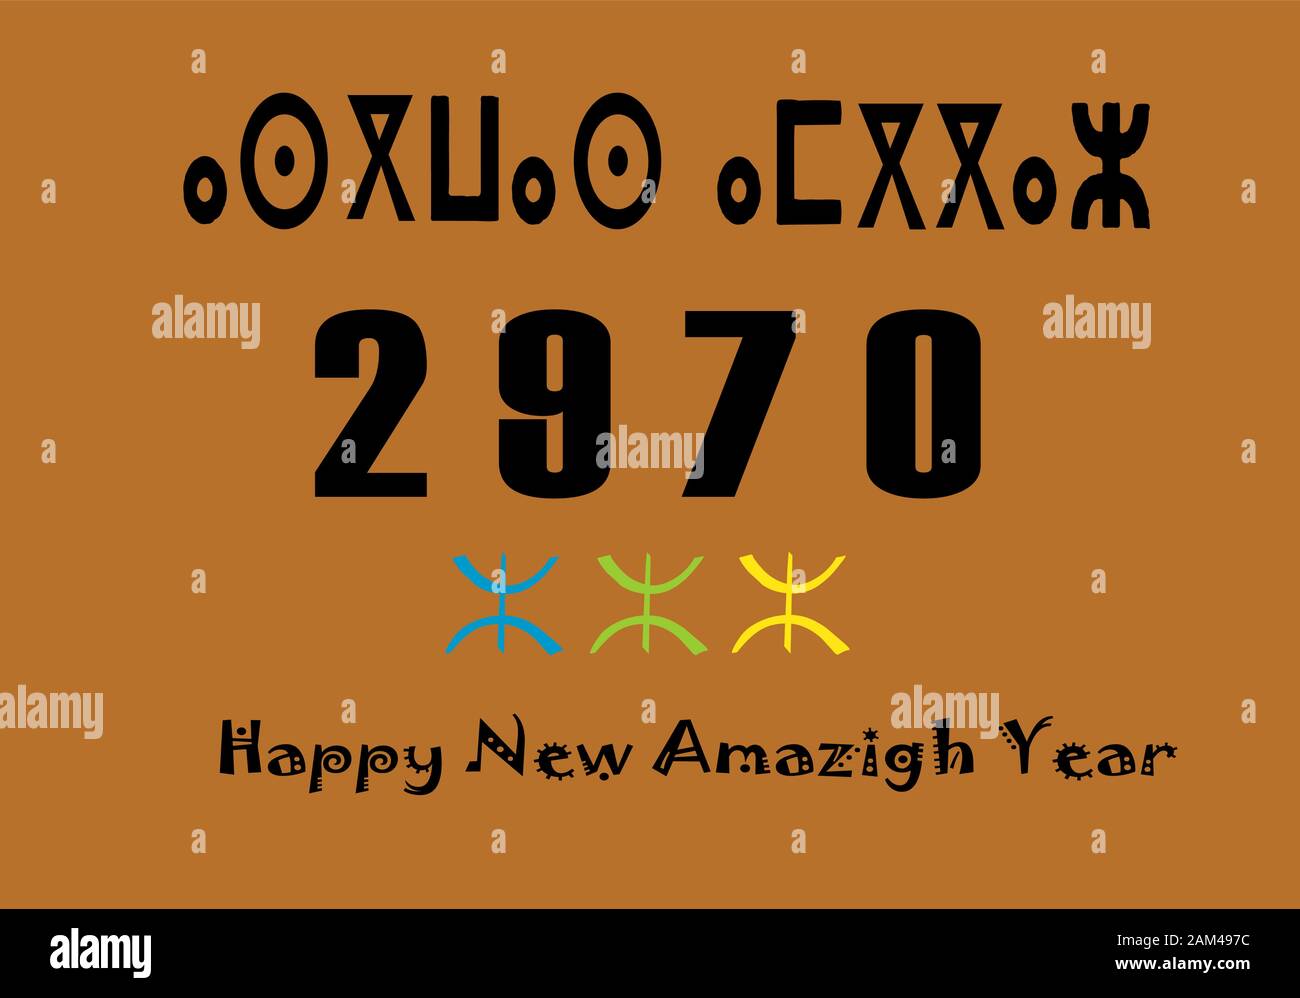 illustrazione vettoriale del nuovo anno, felice anno berbero nuovo, illustrazione di saluto per il nuovo anno. Illustrazione Vettoriale